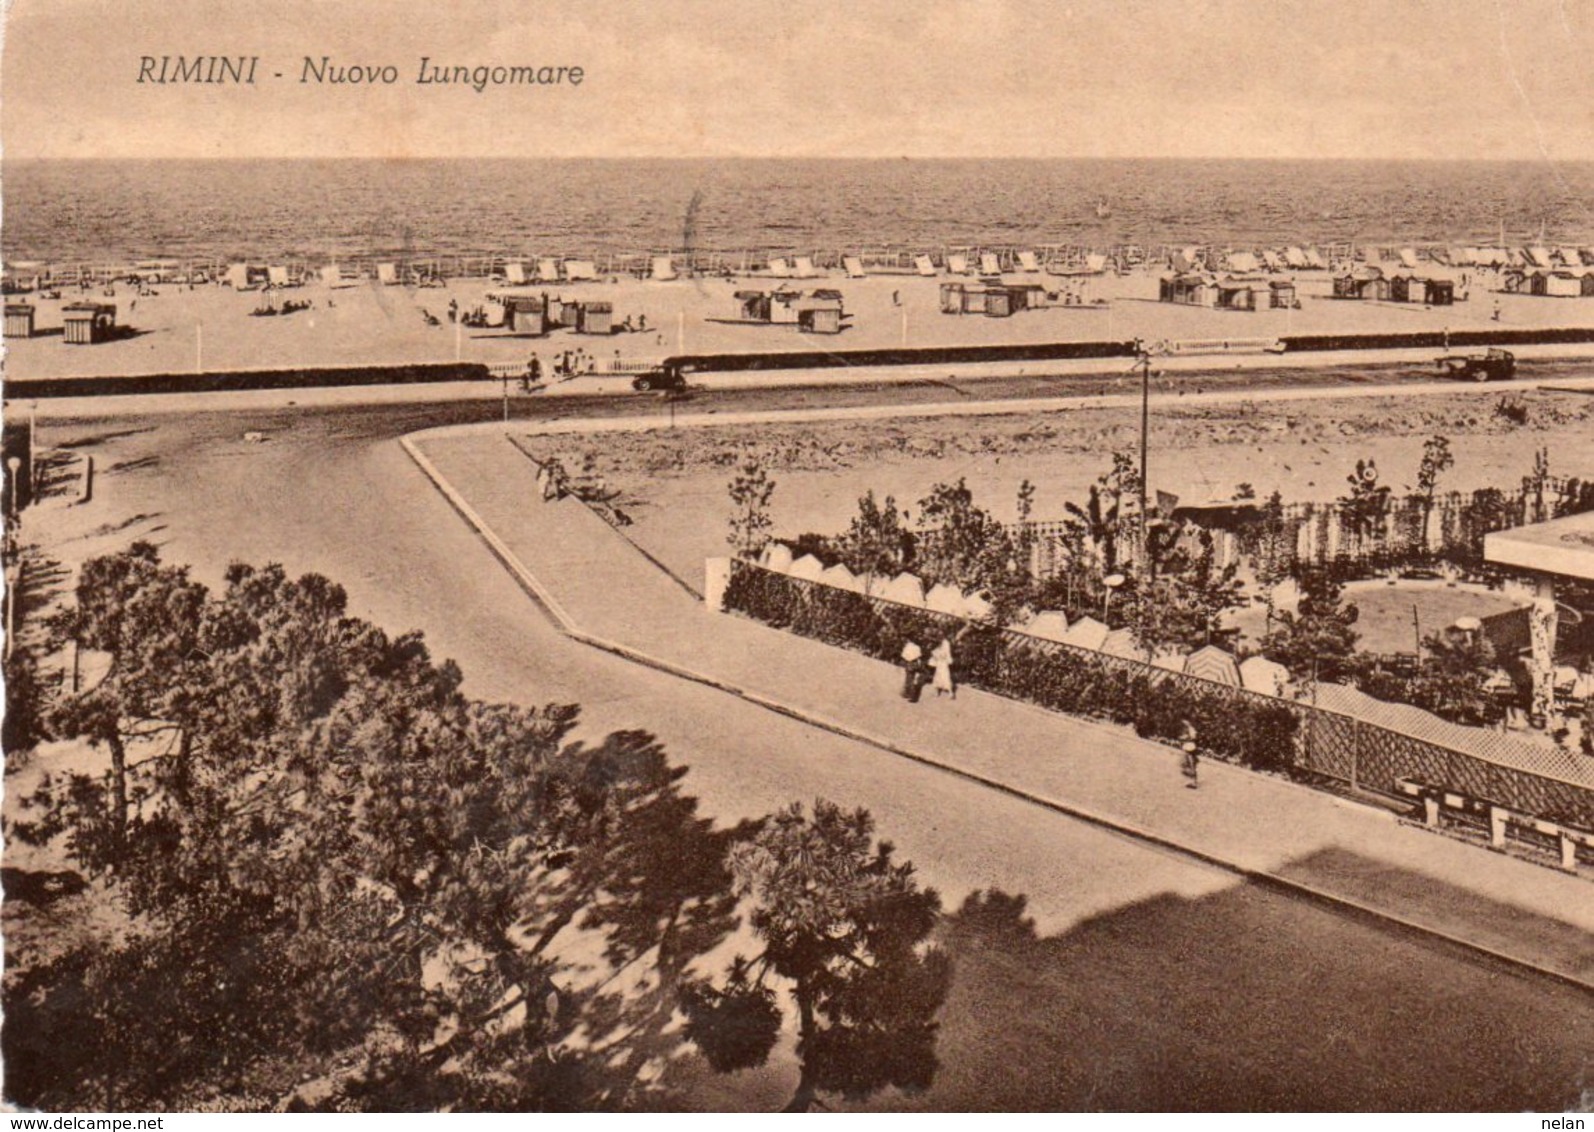 RIMINI-NUOVO LUNGOMARE-1951-F.G - Rimini